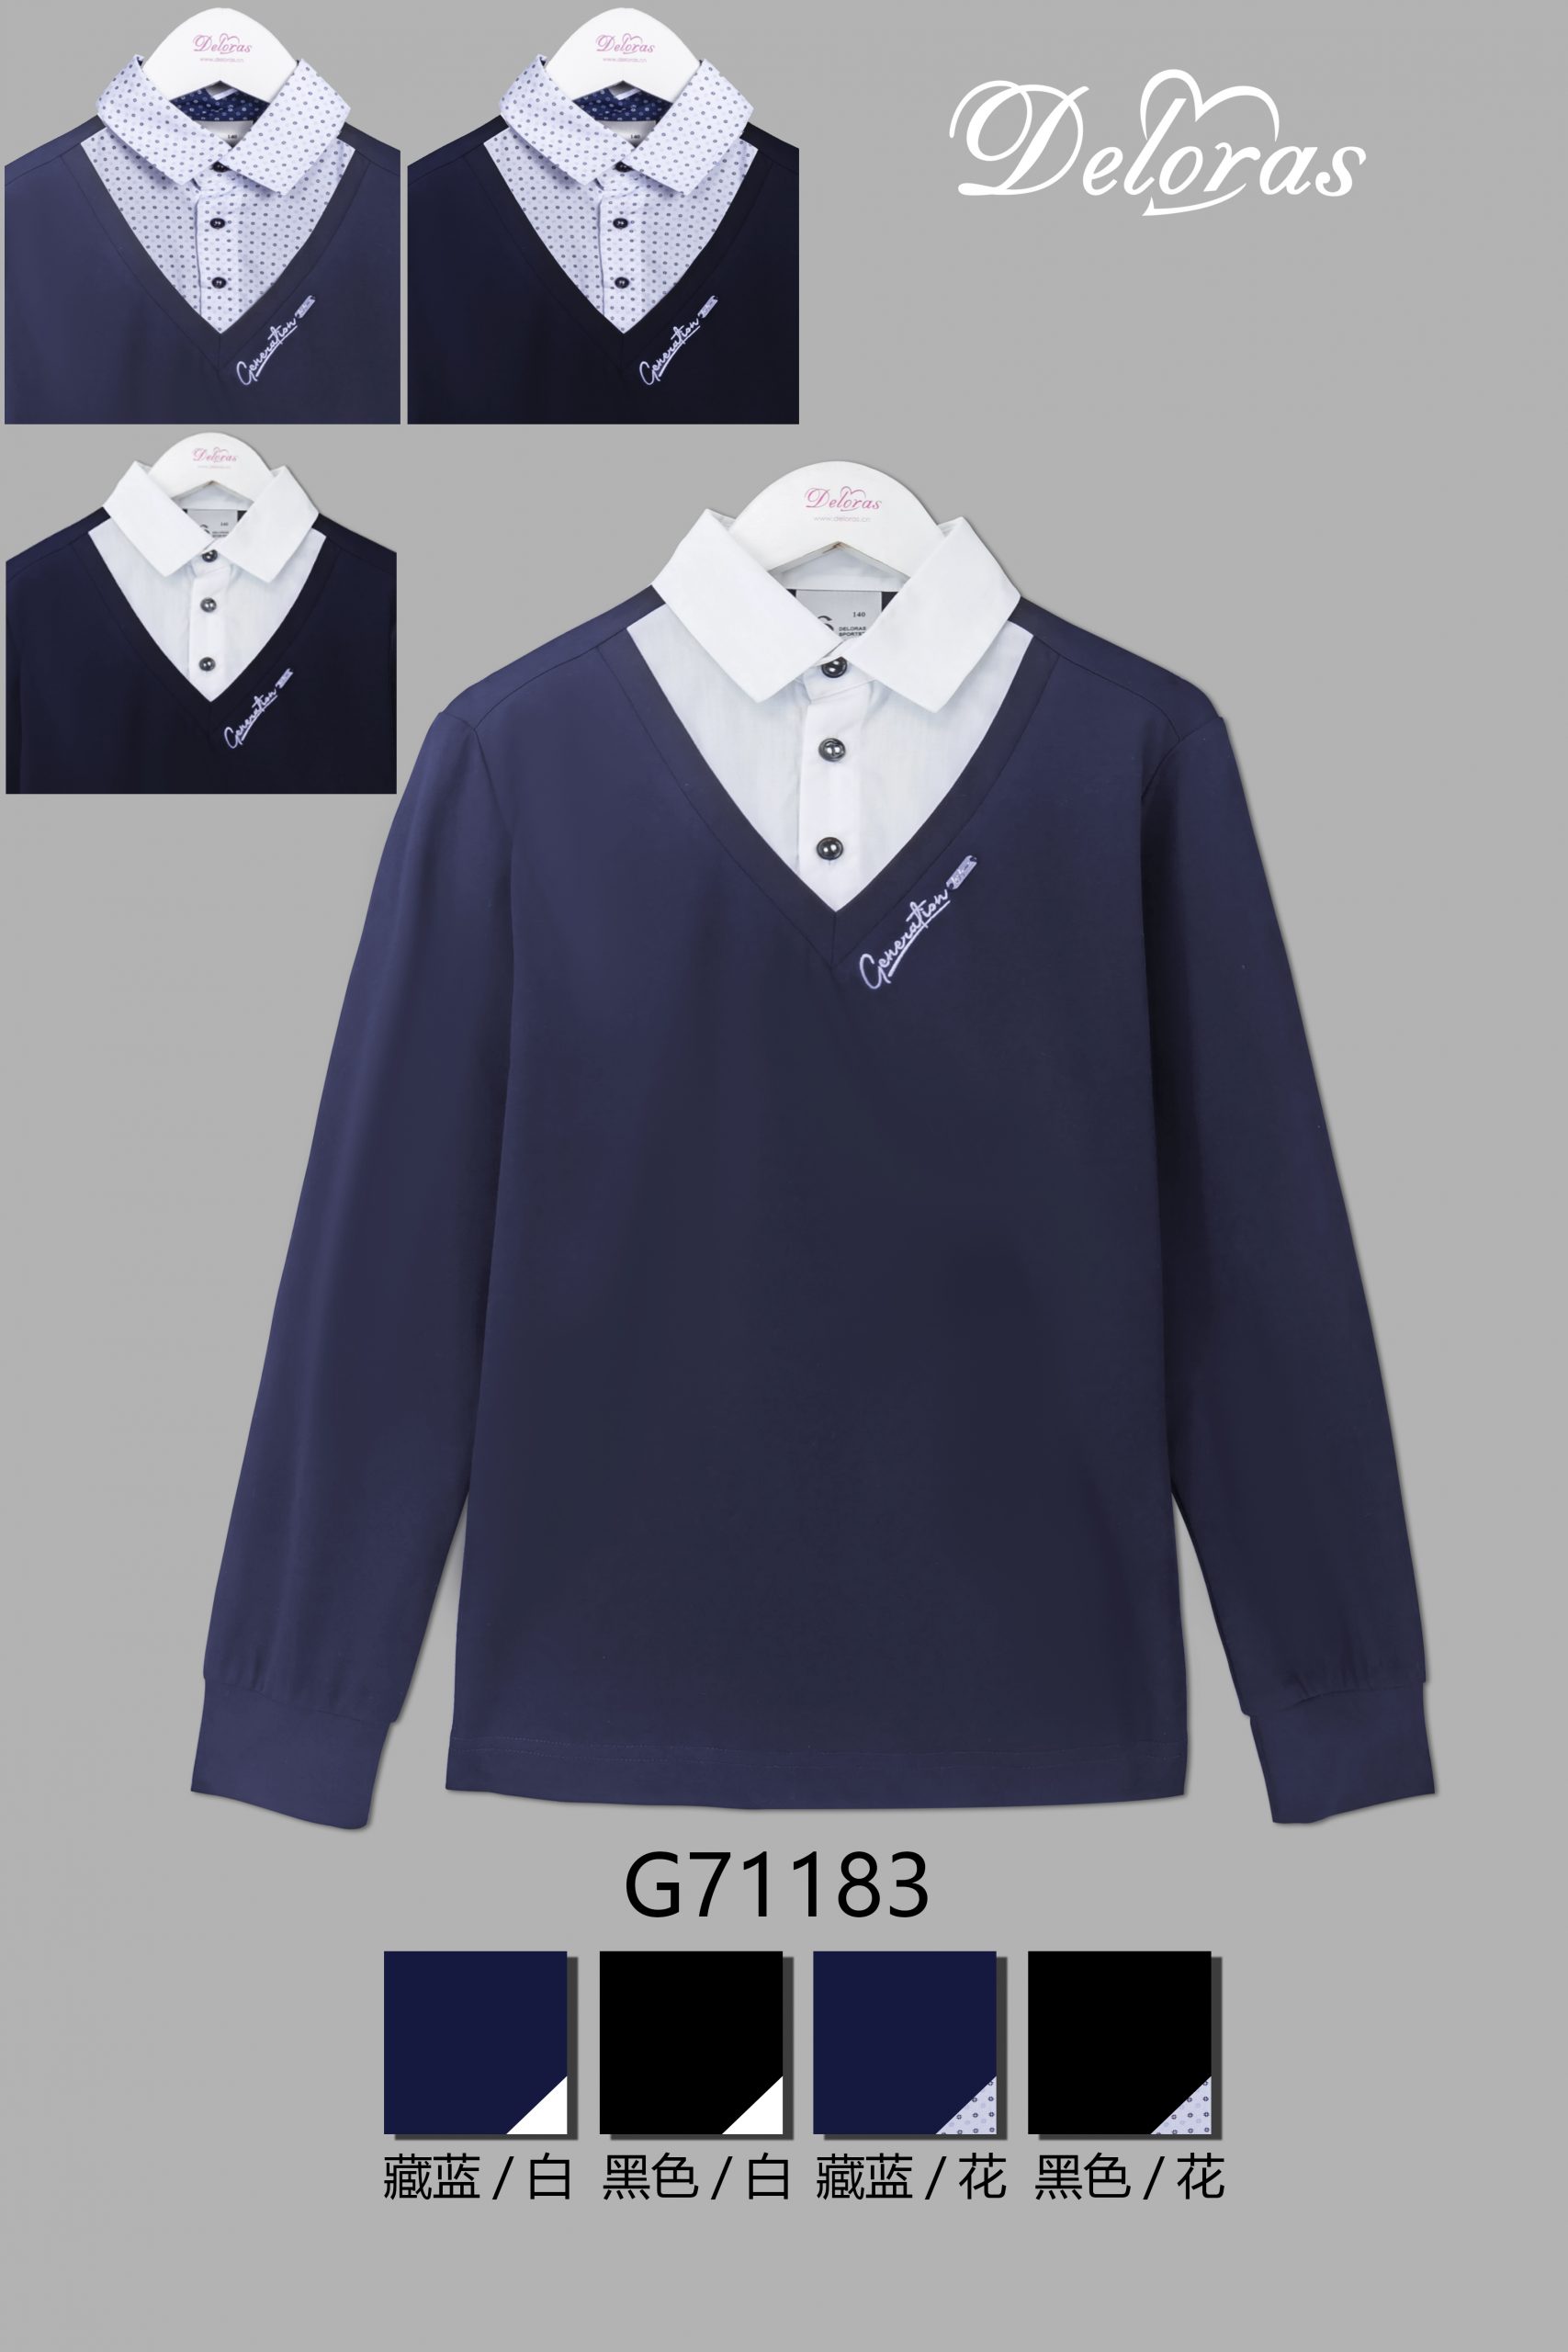 модная детская одежда 71183 g джемпер-обманка для мальчика джемпера/водолазки/жакеты